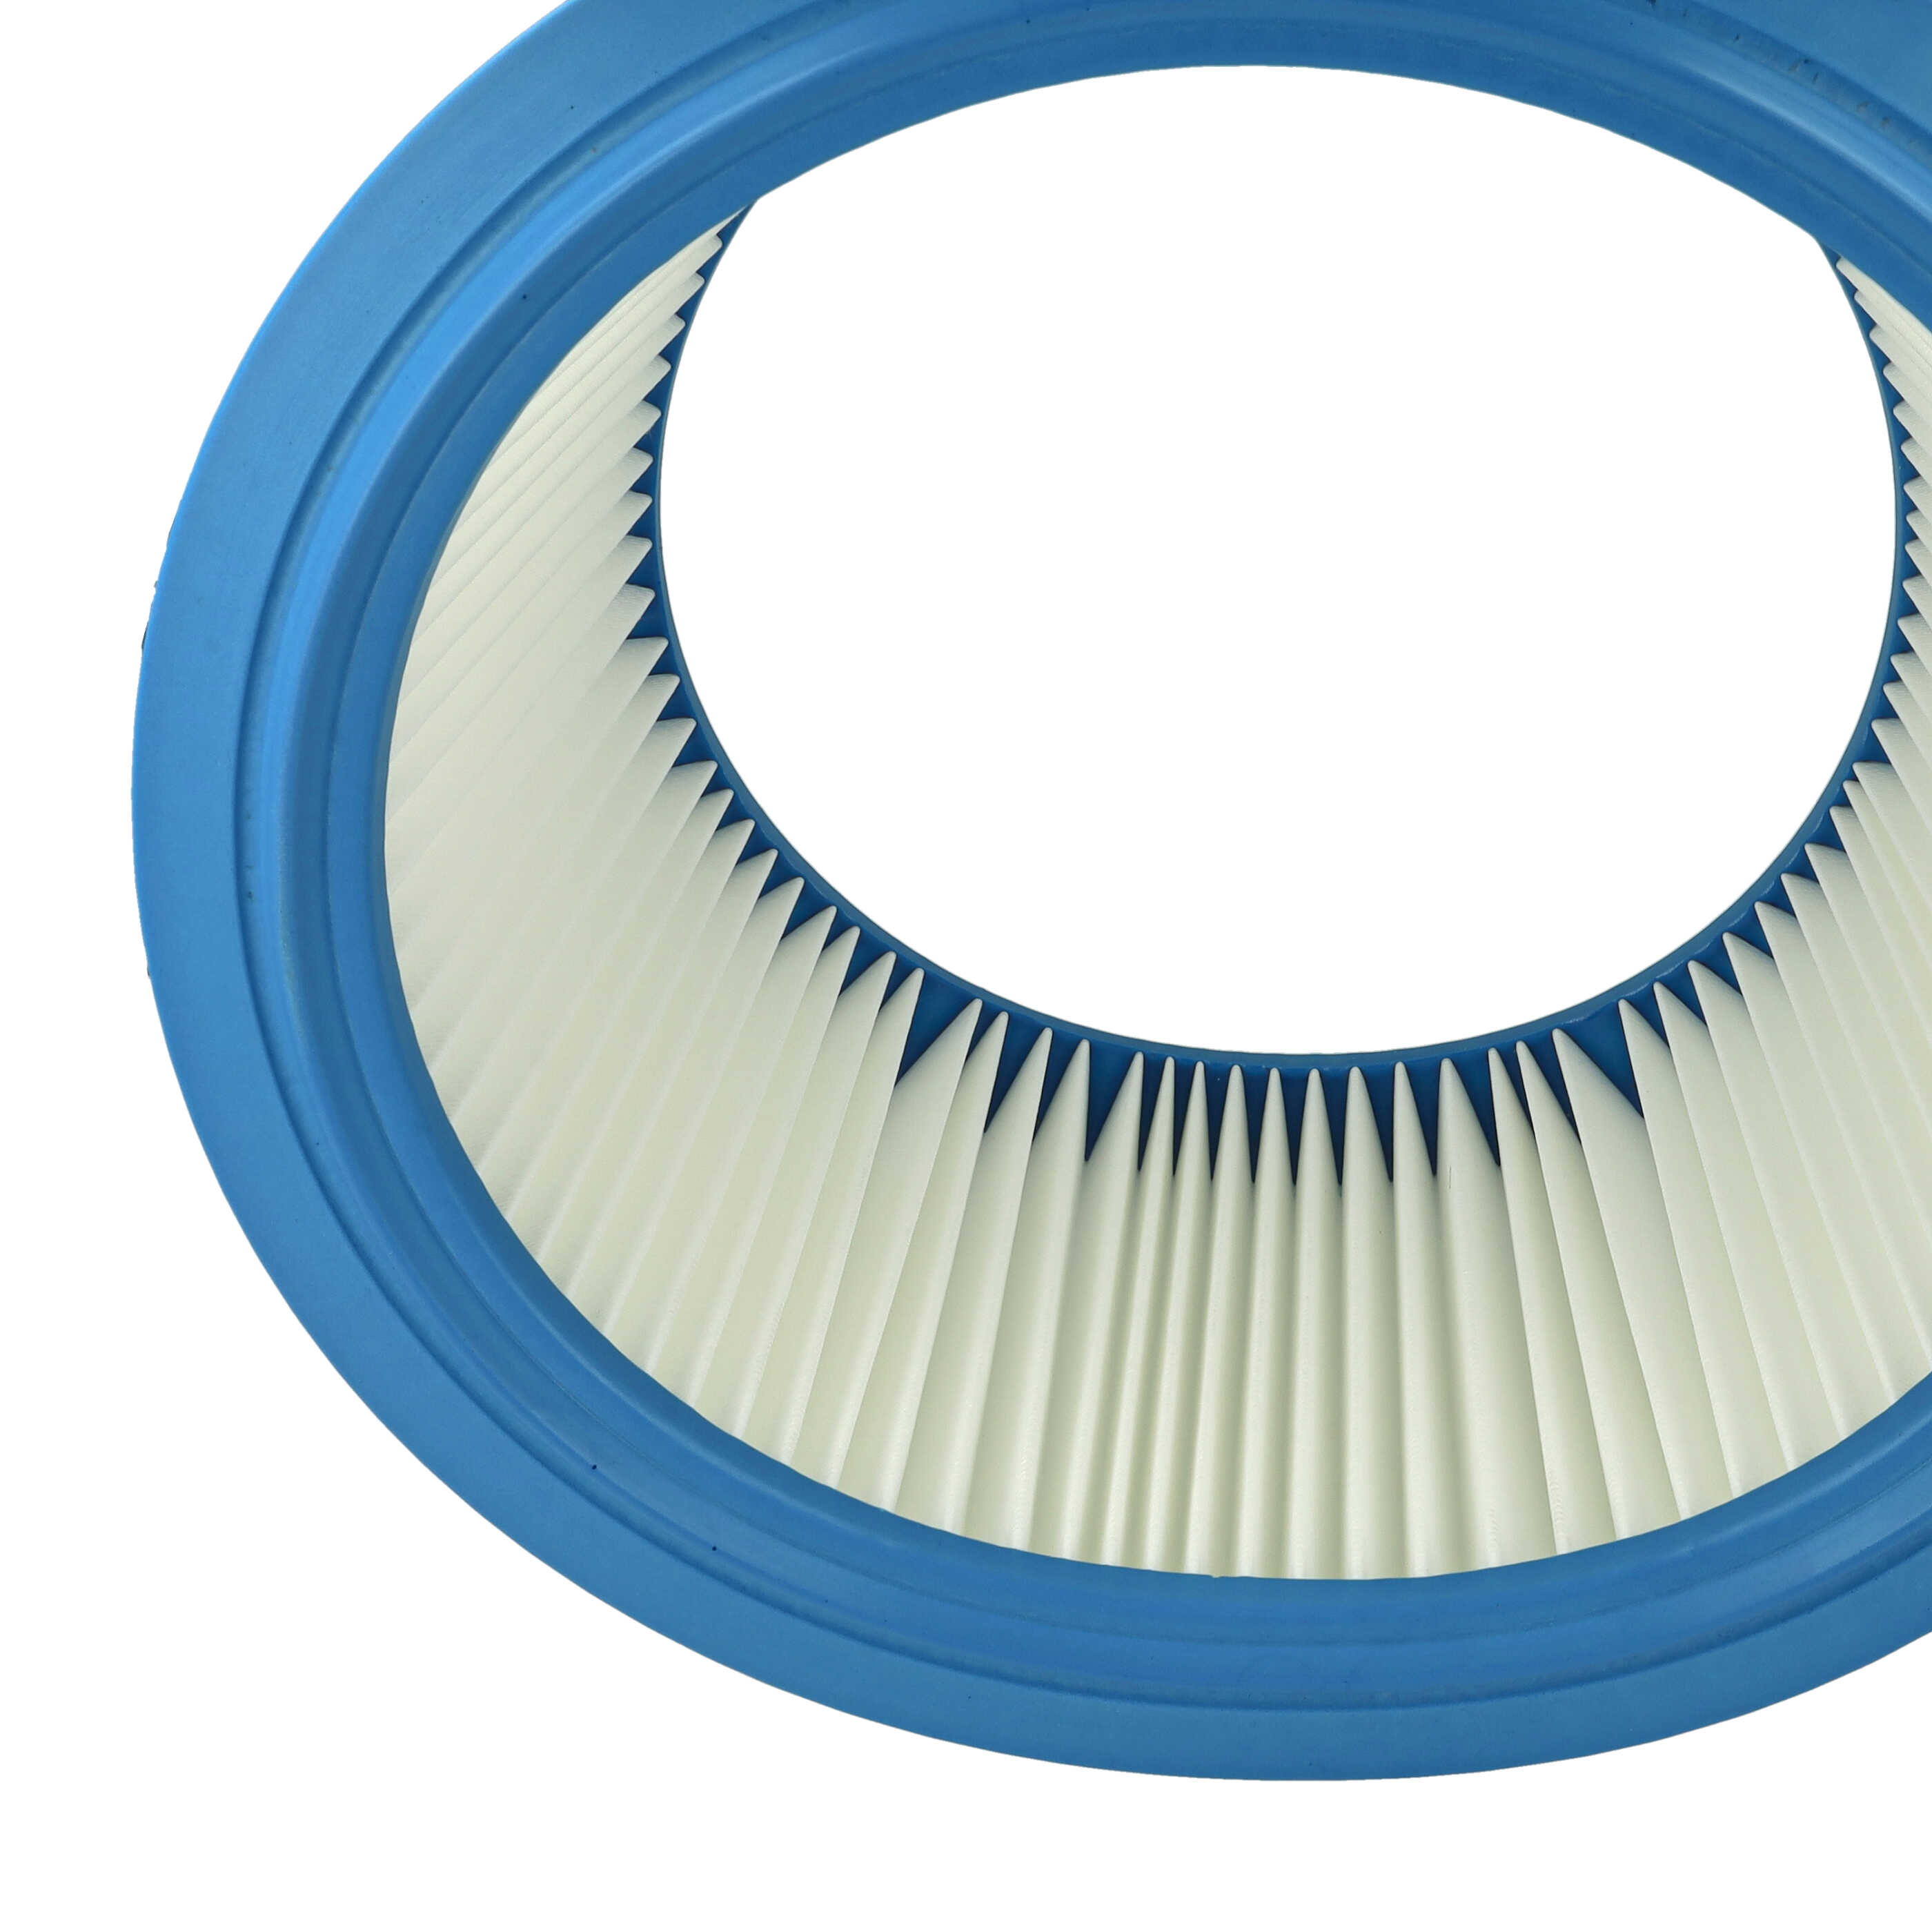 1x filter element replaces Festool 496406 for Festool Vacuum Cleaner